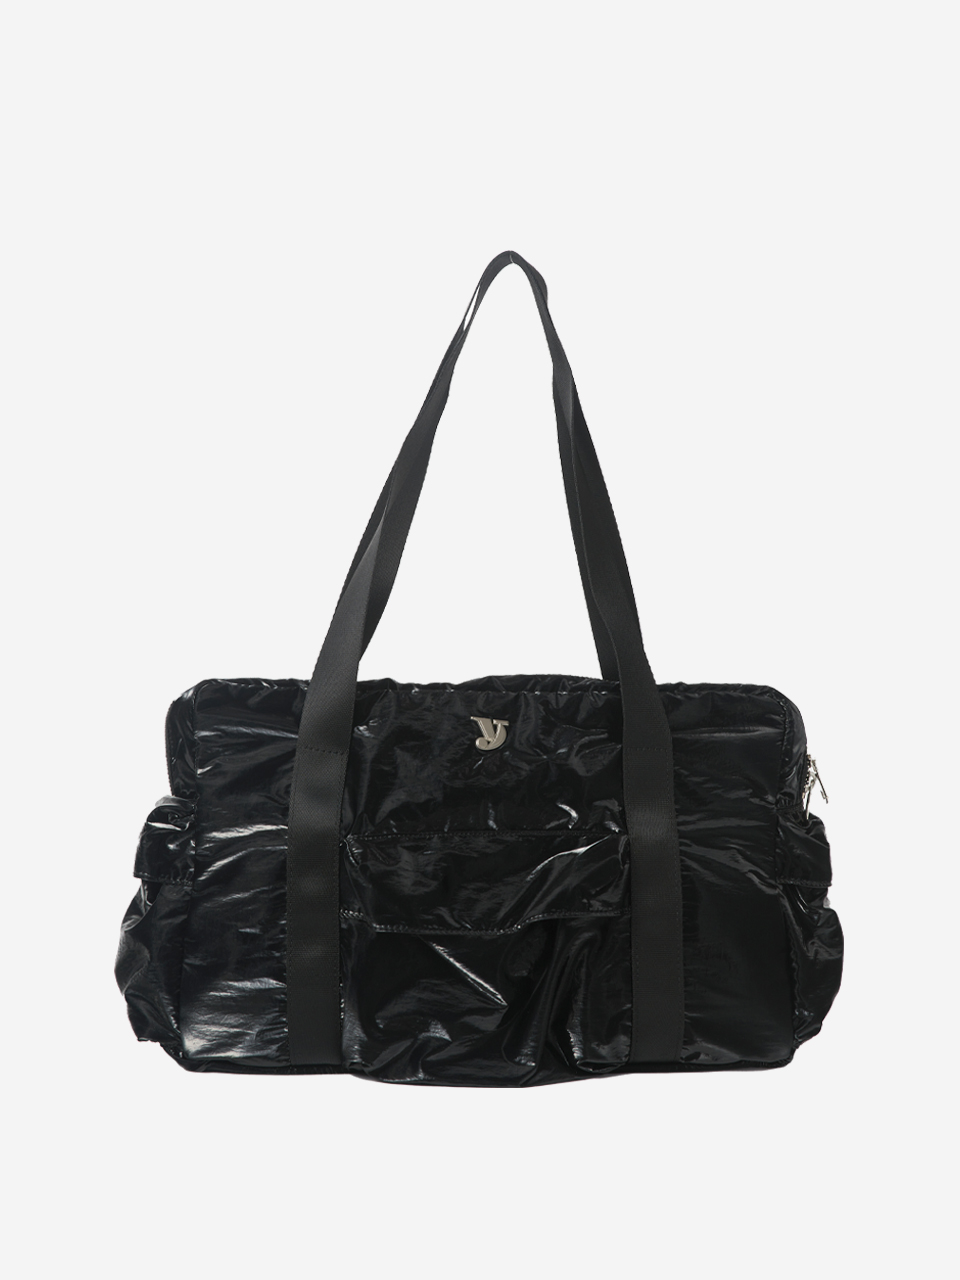 [square wallet 증정] 10/20 예약배송 [1차 재입고] weekend bag (black)